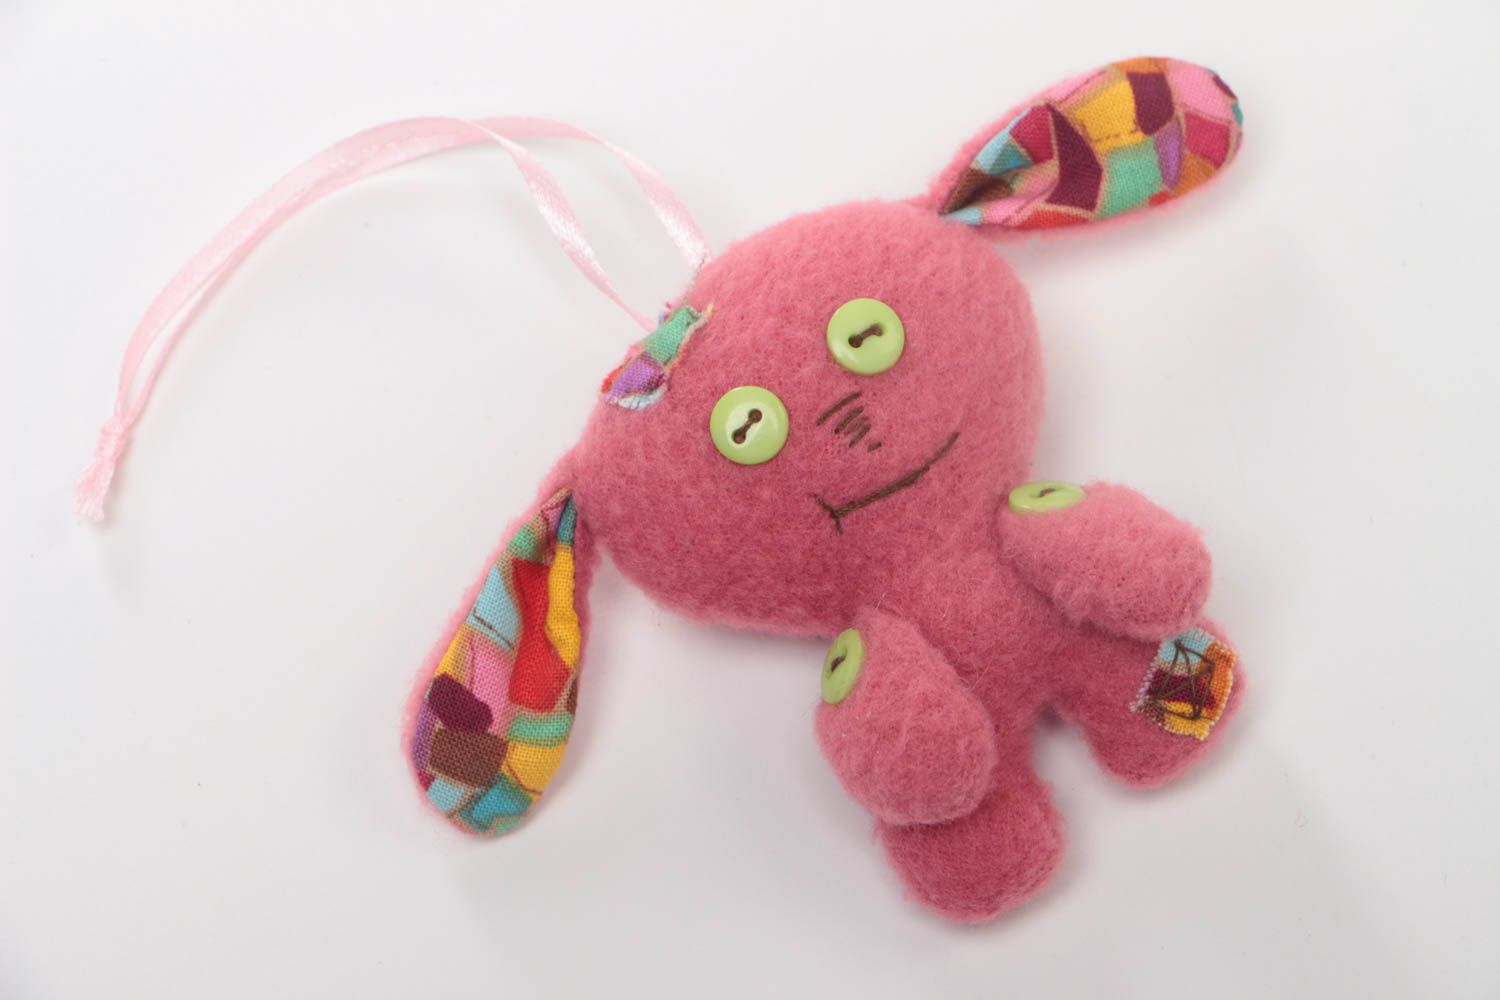 Мягка интерьерная подвеска игрушка с петелькой для ребенка розовая зайка хенд мейд фото 2